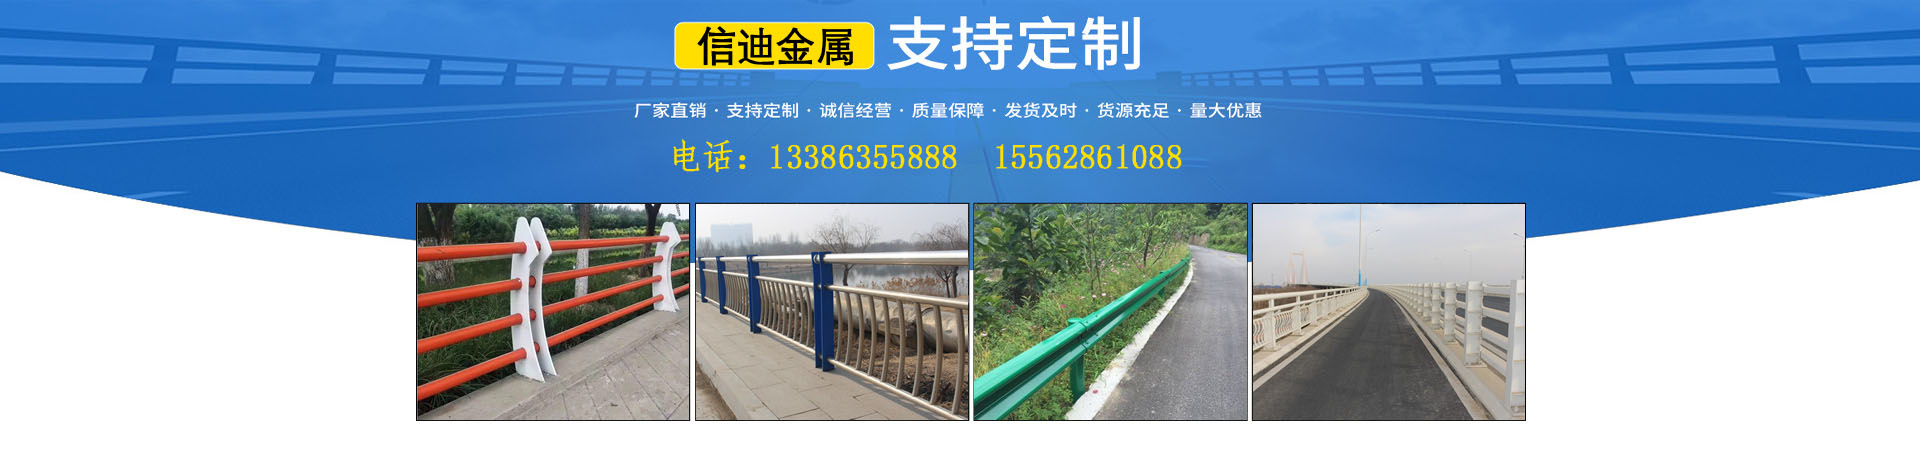 【桥梁护栏】、内蒙古本地【桥梁护栏】、内蒙古、内蒙古【桥梁护栏】